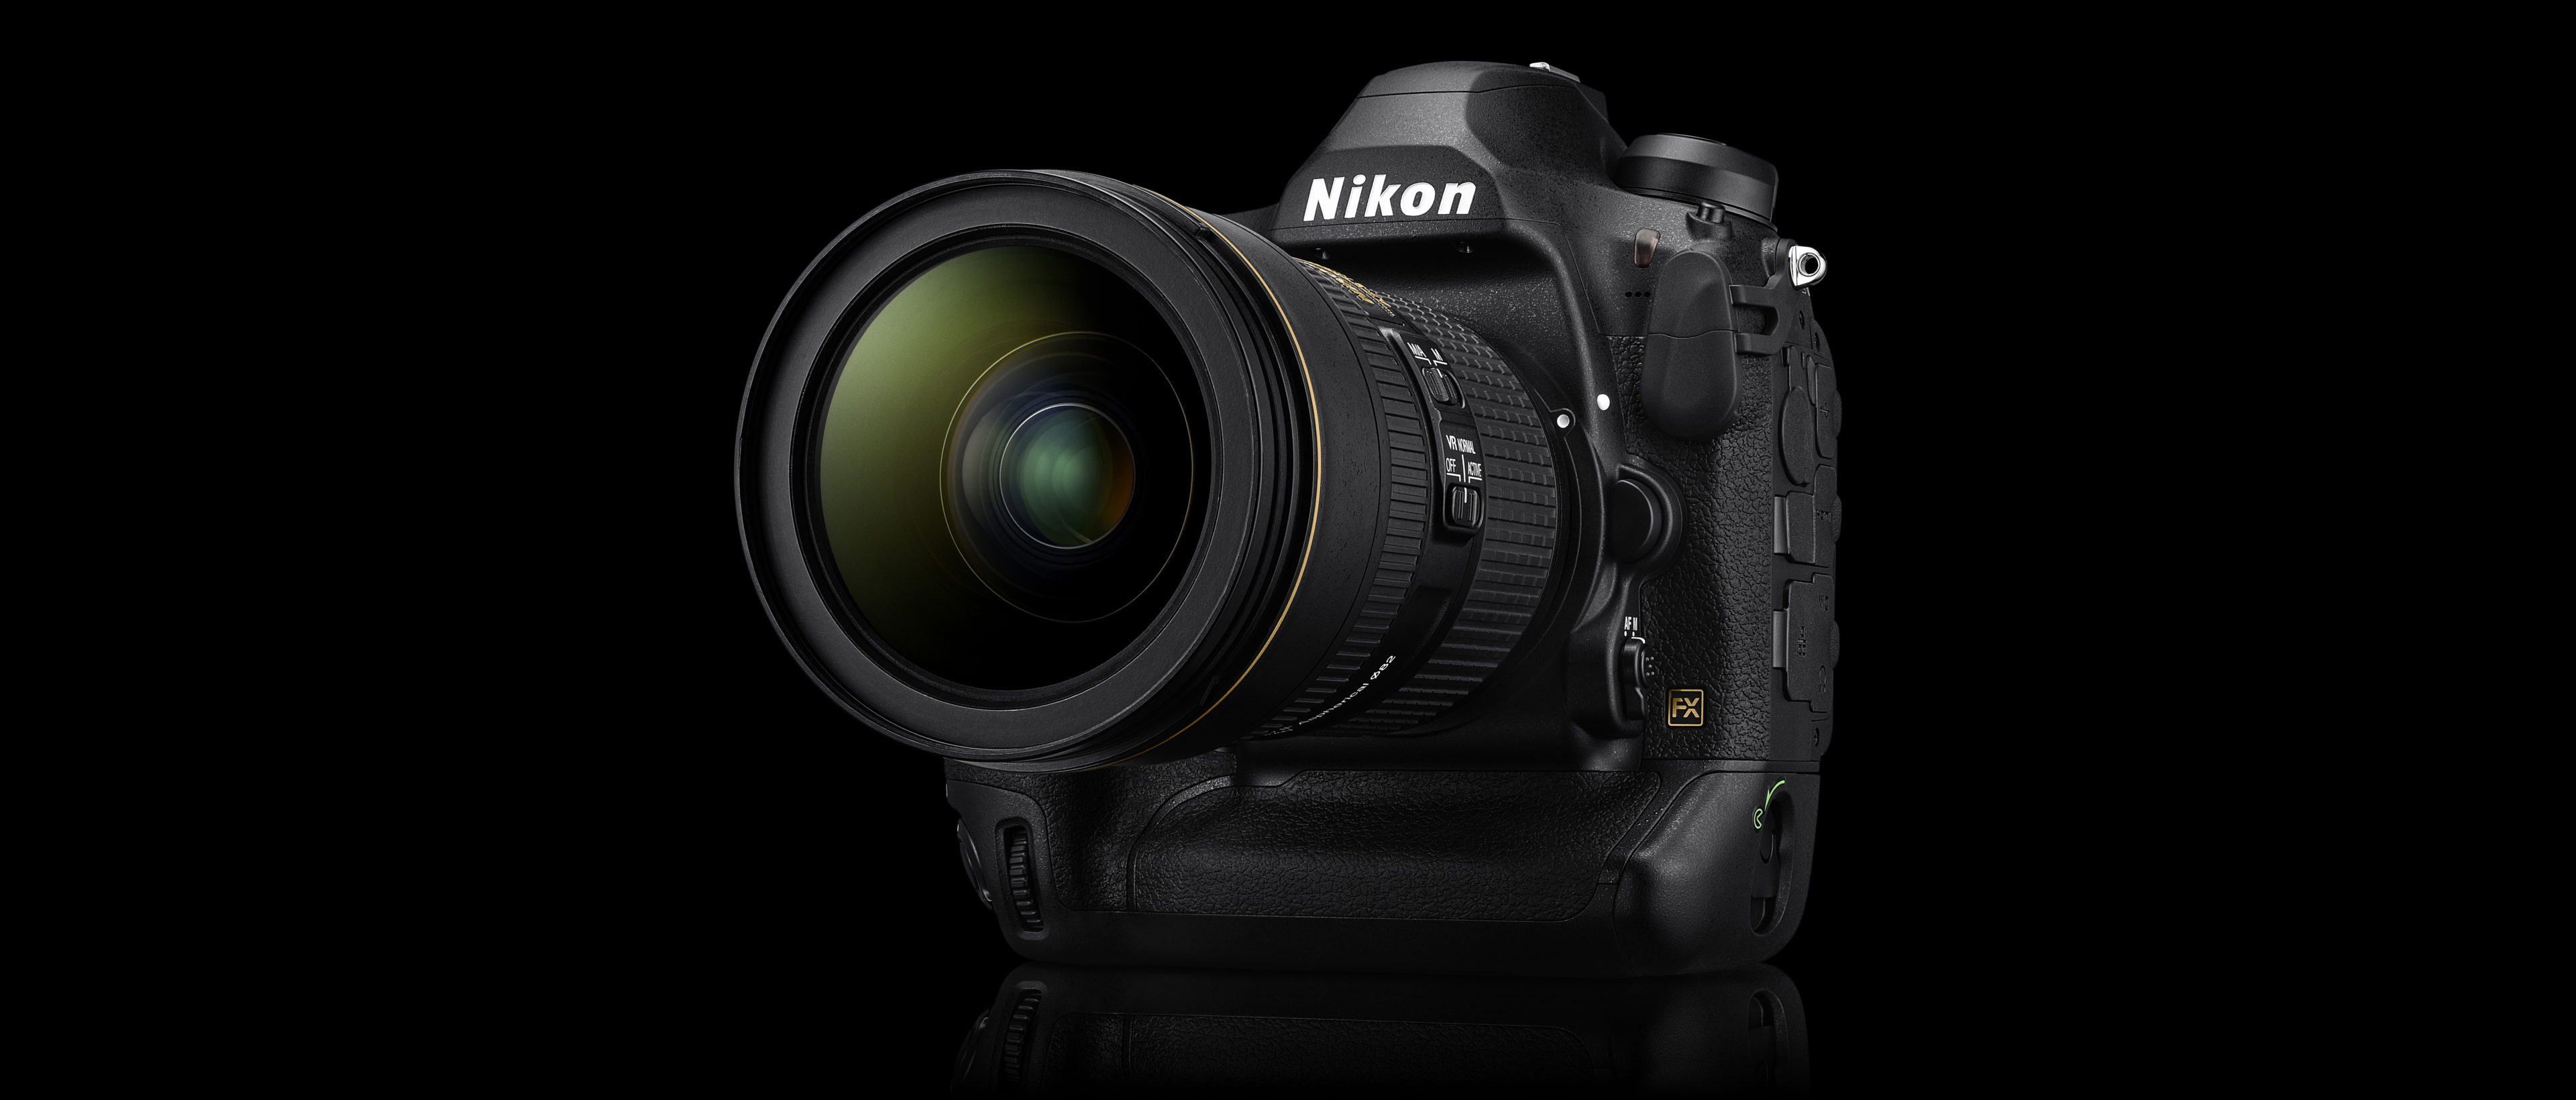 Background: Post Thumbnail: Nikon – Das Auge der Zeit